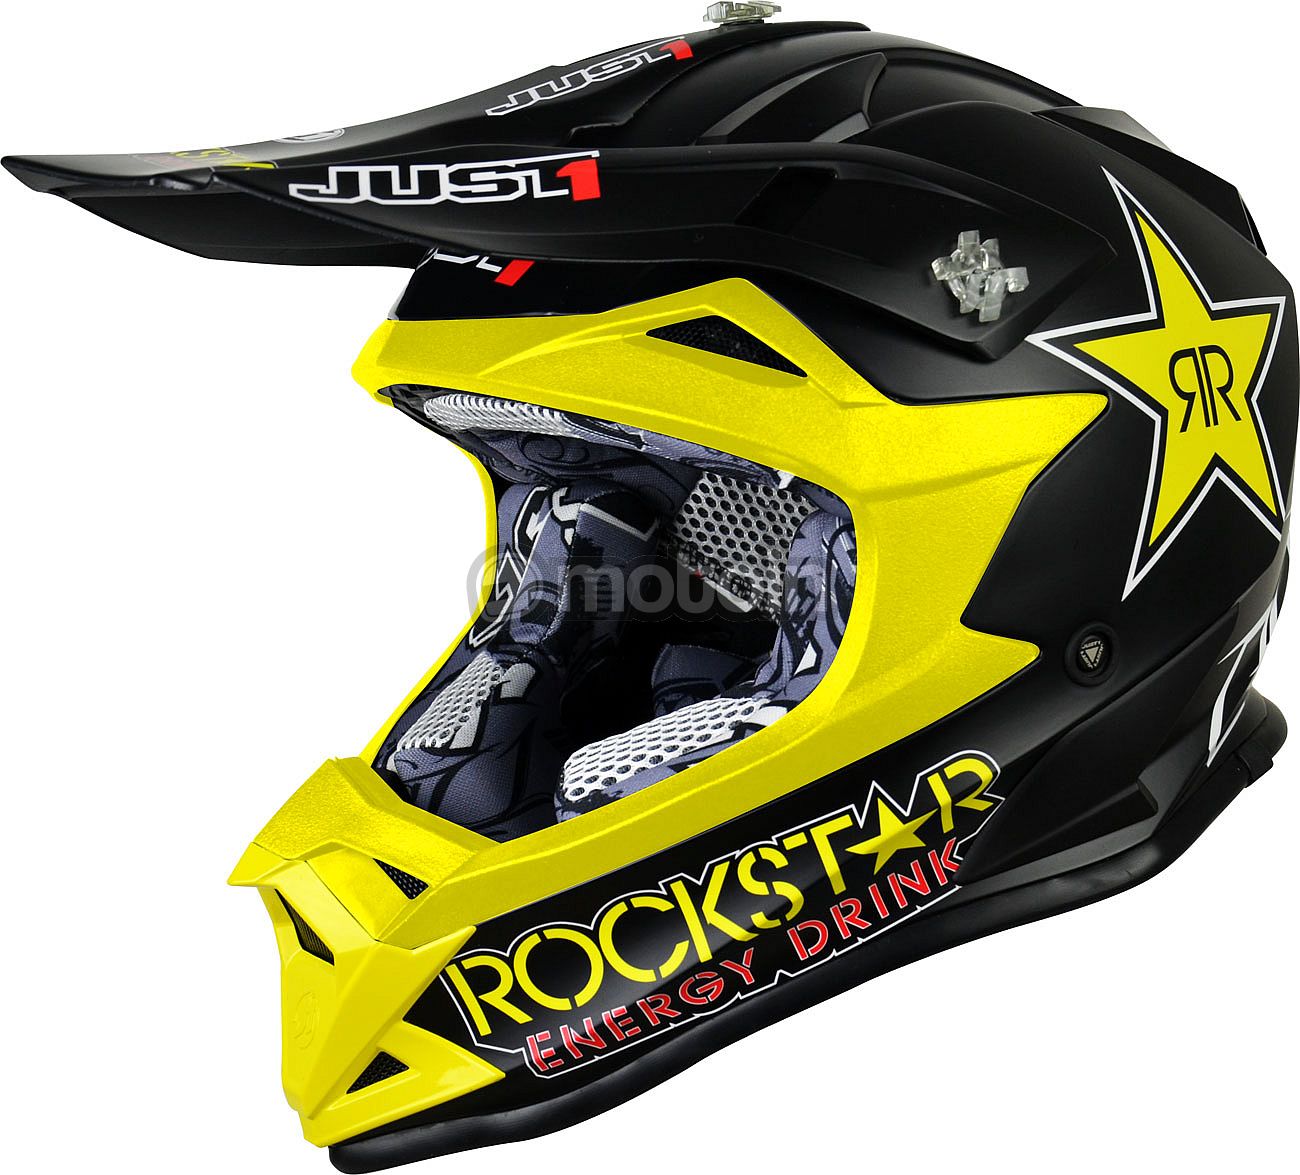 Just1 J32 Pro Rockstar, cross helmet kids